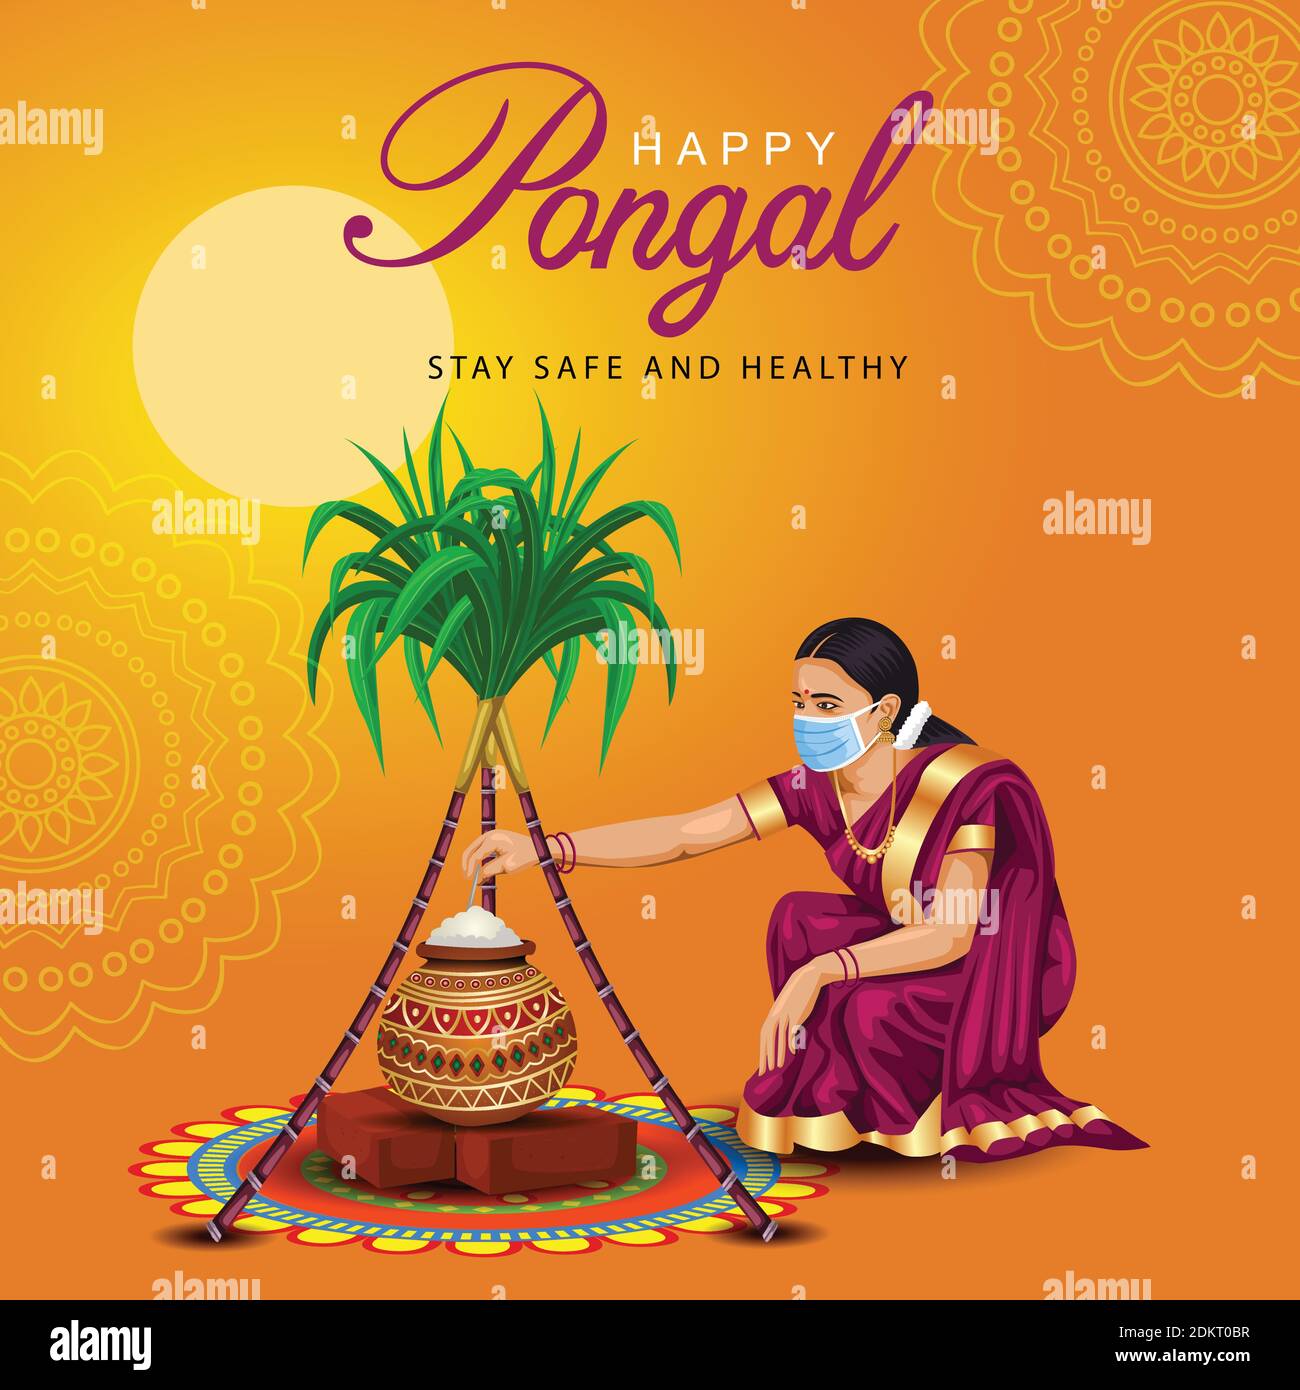 Happy Pongal Feier mit Zuckerrohr, Rangoli, Topf und Reis. Tamilisches Mädchen trägt Gesichtsmaske. Indisches kulturelles Festival Feier Konzept Vektor illu Stock Vektor